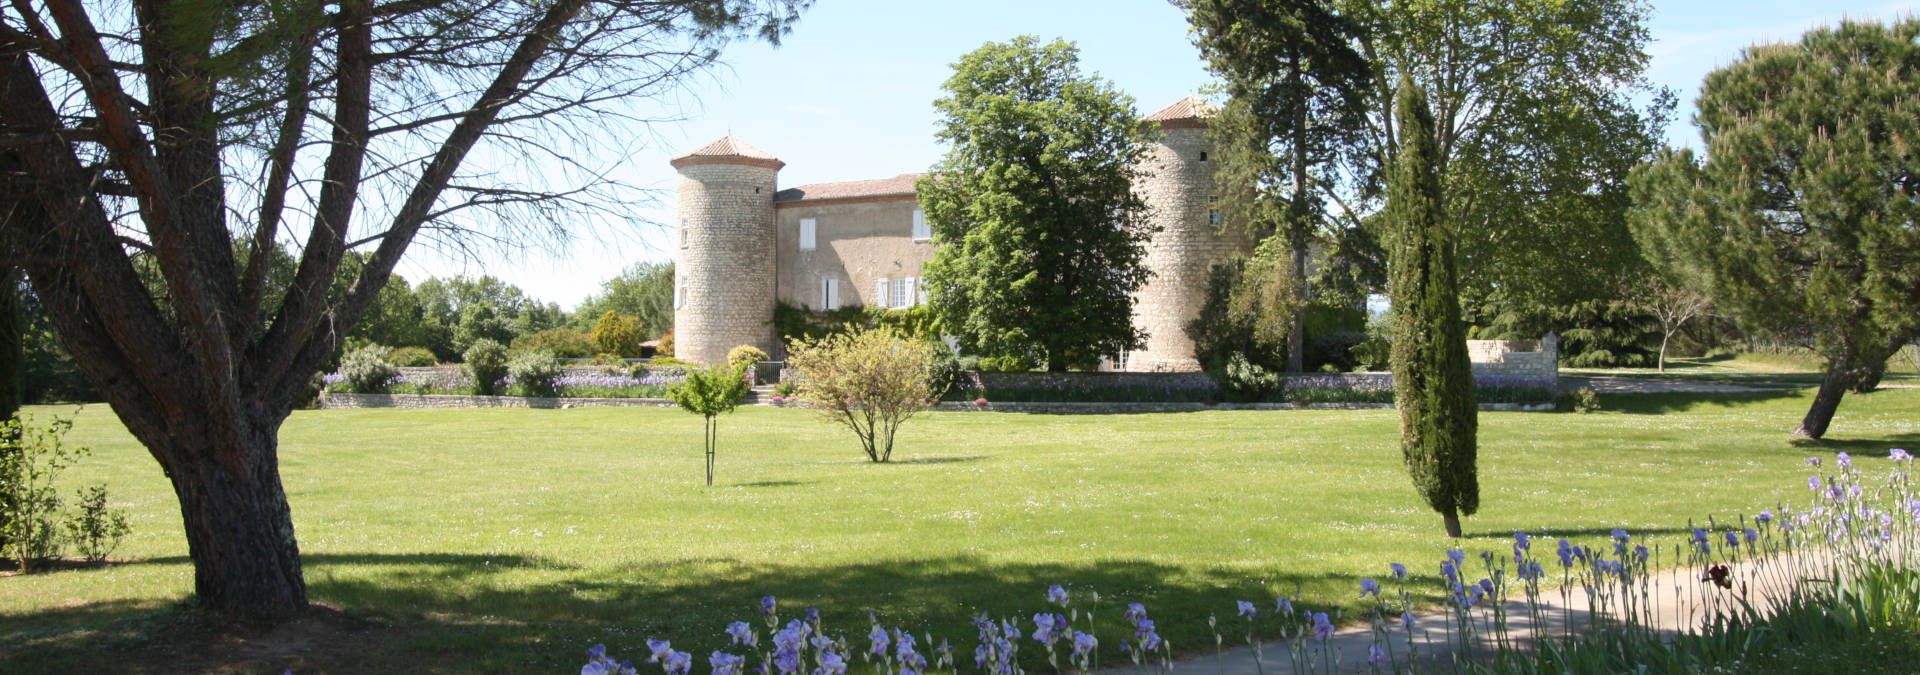 Château de la Selve - Rue des Vignerons